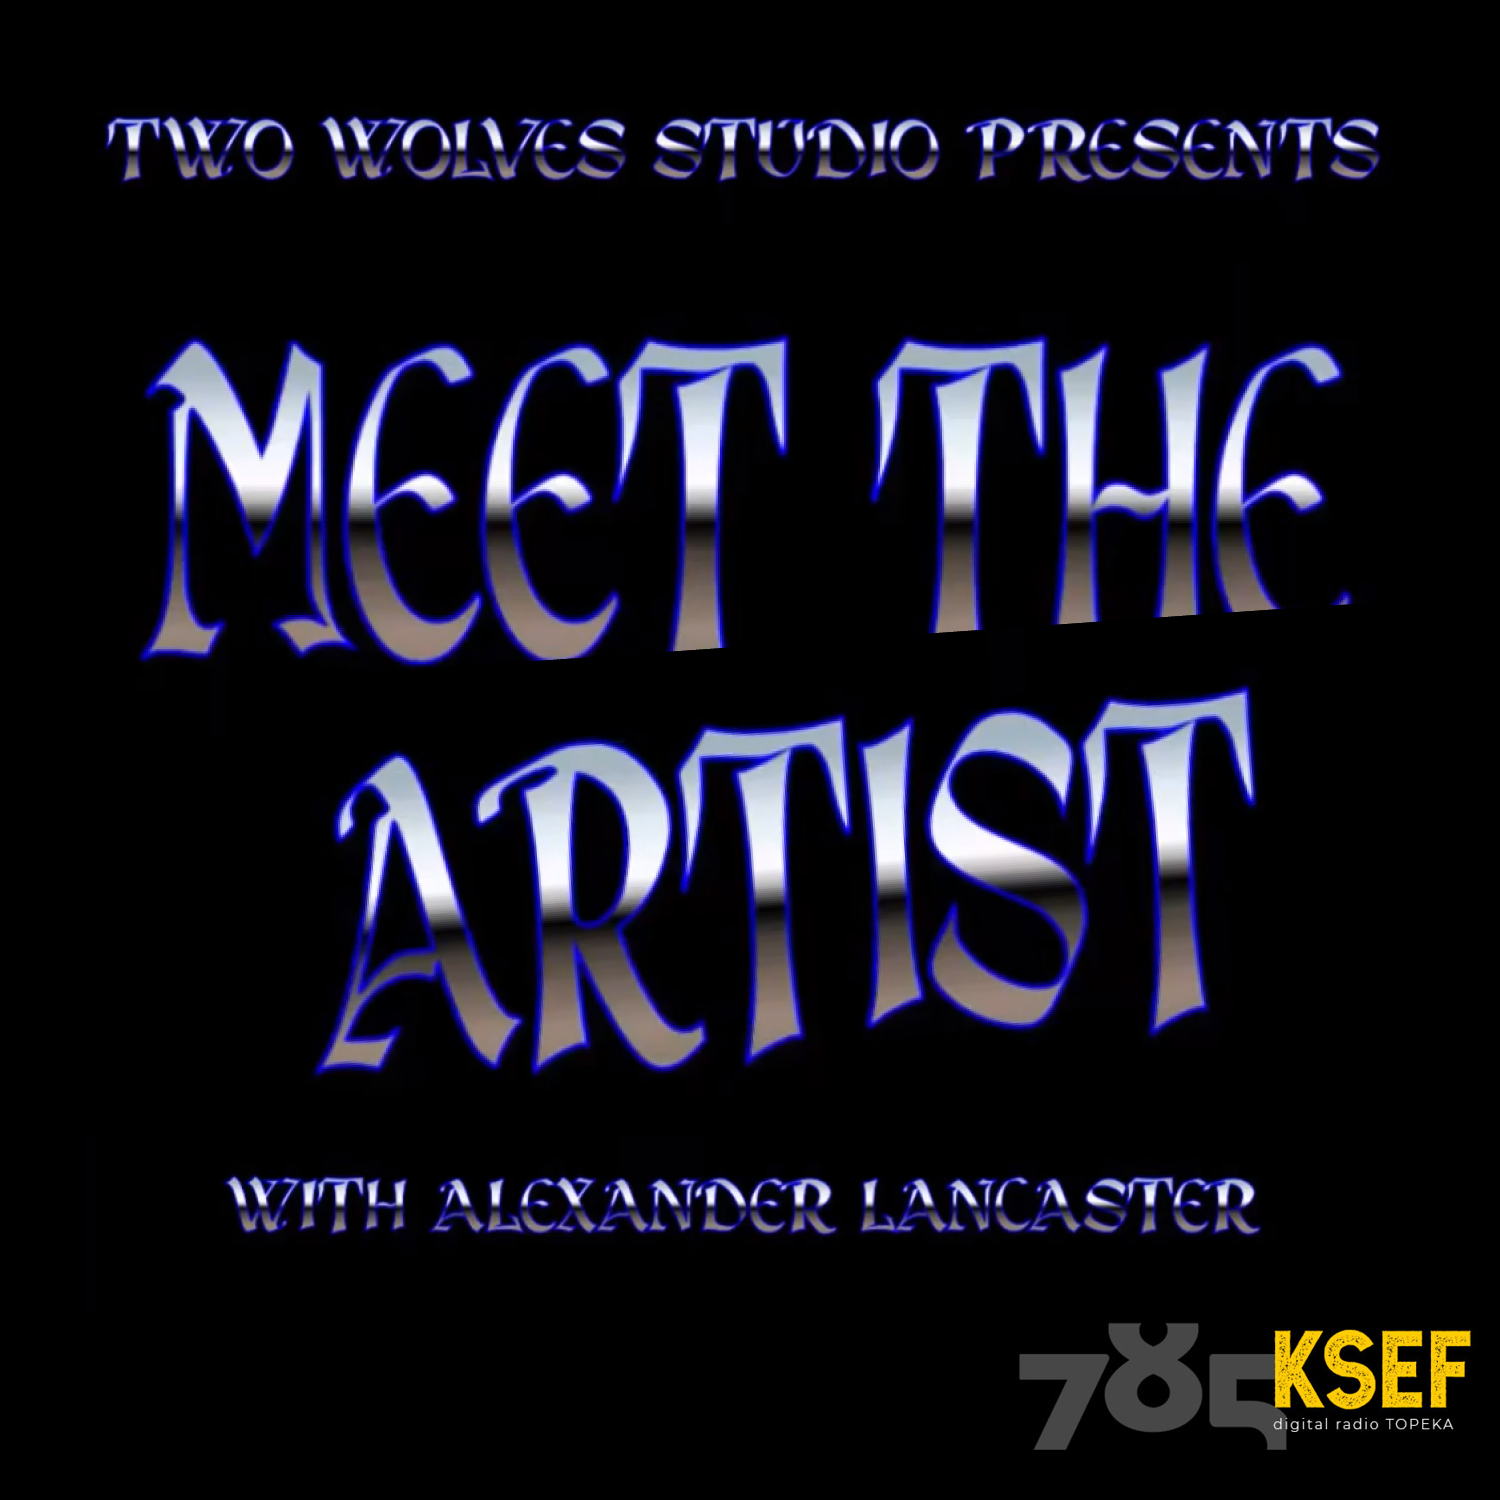 Artwork for podcast Meet The Artist